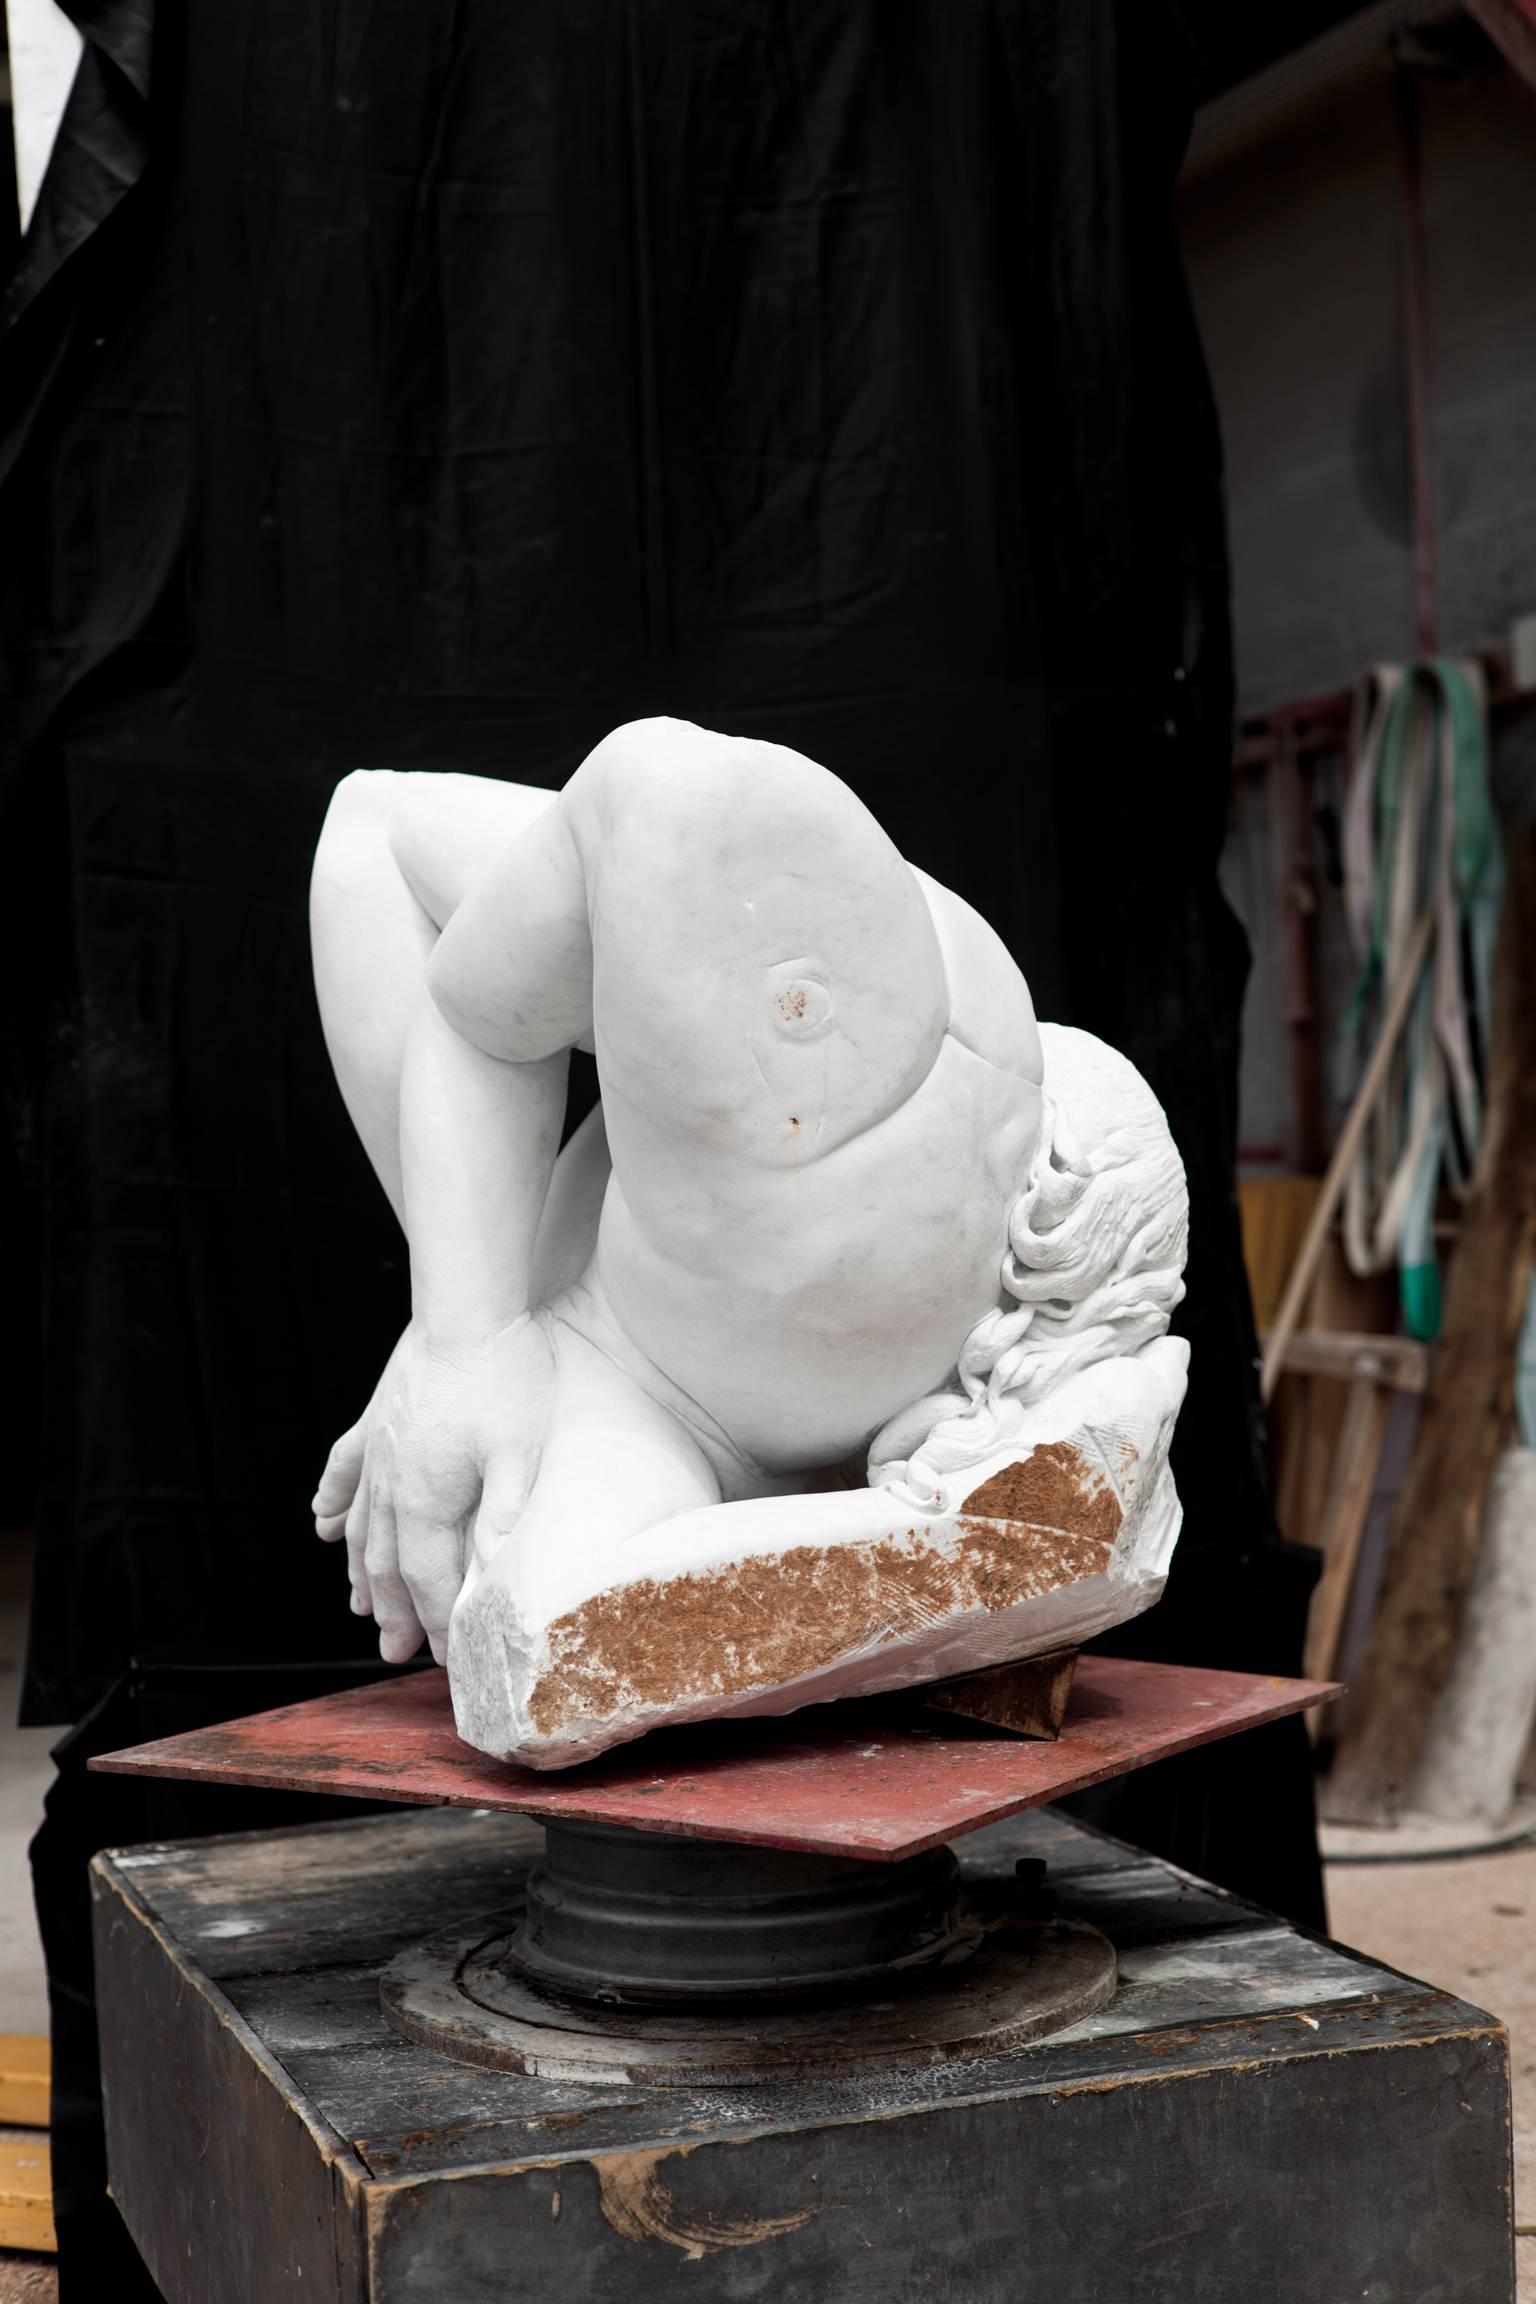 EMBRIONE von Lorenzo Vignoli

auffällige, handgeschnitzte Skulptur aus Carrara-Marmor des zeitgenössischen italienischen Bildhauers Lorenzo Vignoli, die klassische Bezüge und zeitgenössische mediterrane Einflüsse aufweist

Abmessungen der